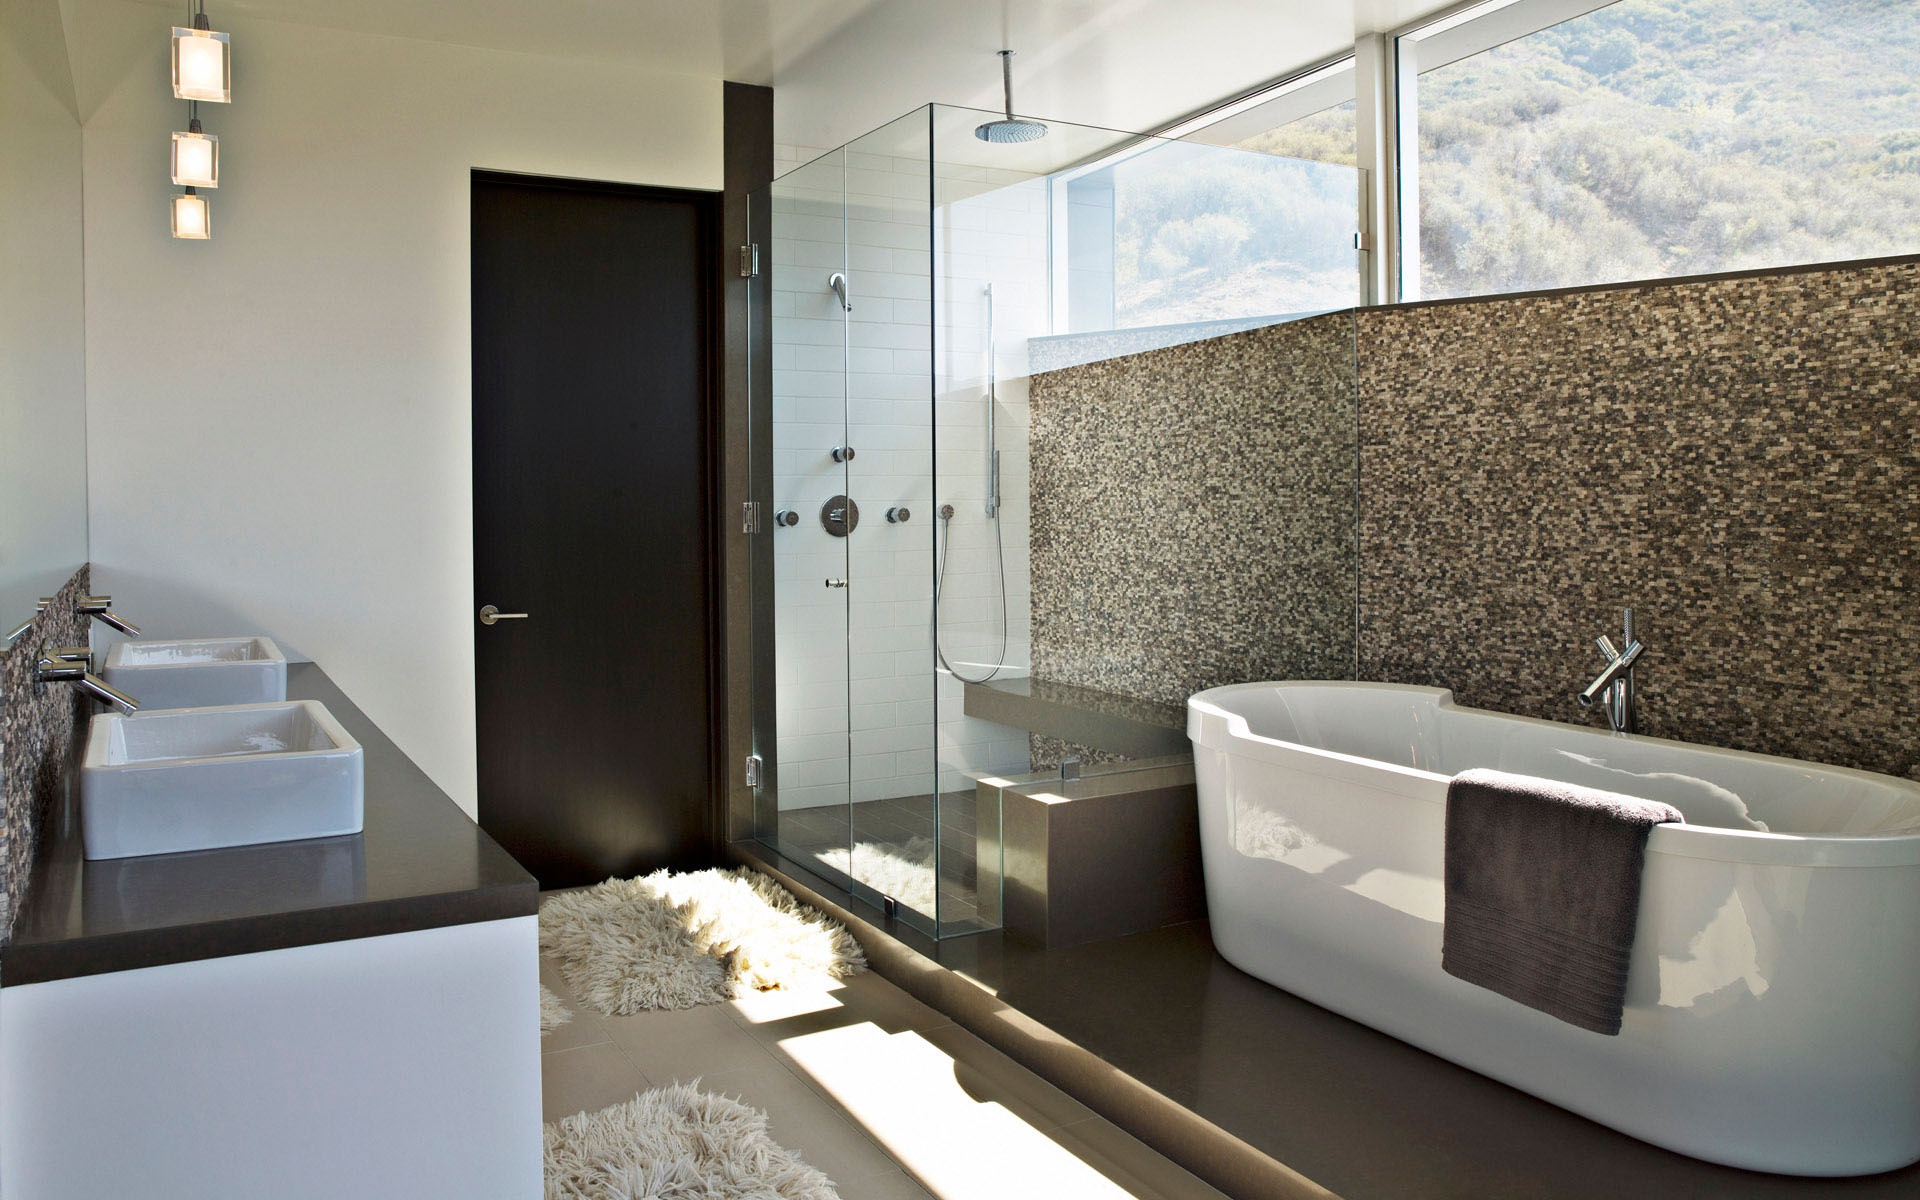 contemporary bathroom wallpaper,bathroom,room,property,bathtub,interior design